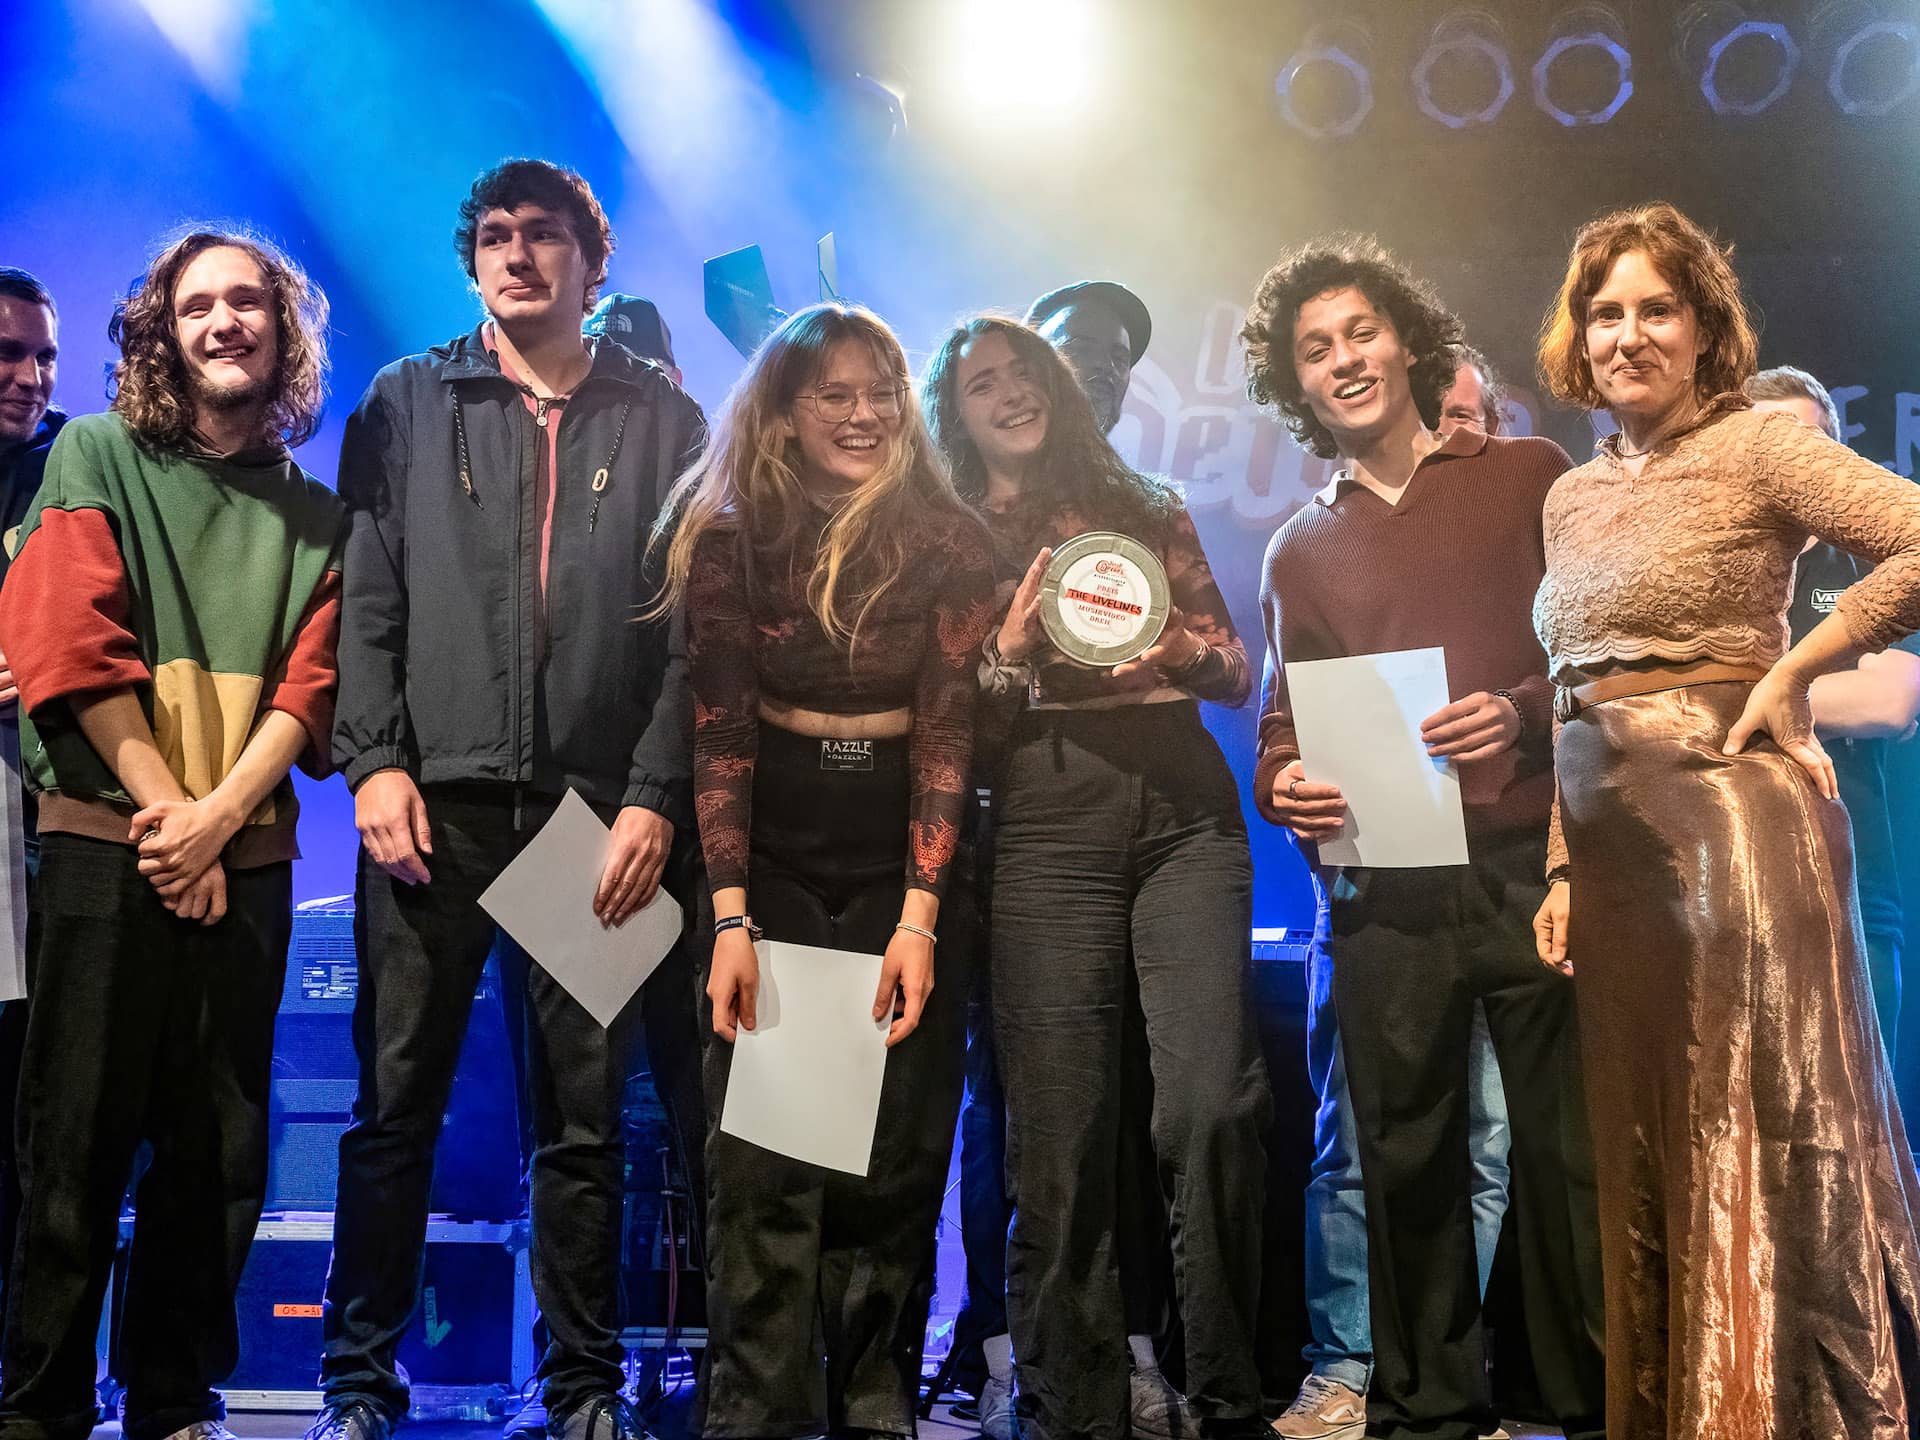 Zu sehen ist die Gewinner Band des local heroes Musikpreis 2022 "The Lifelines". Neben ihnen Vera Lüdeck, Geschäftsführerin der LAG Rock in Niedersachsen e.V.